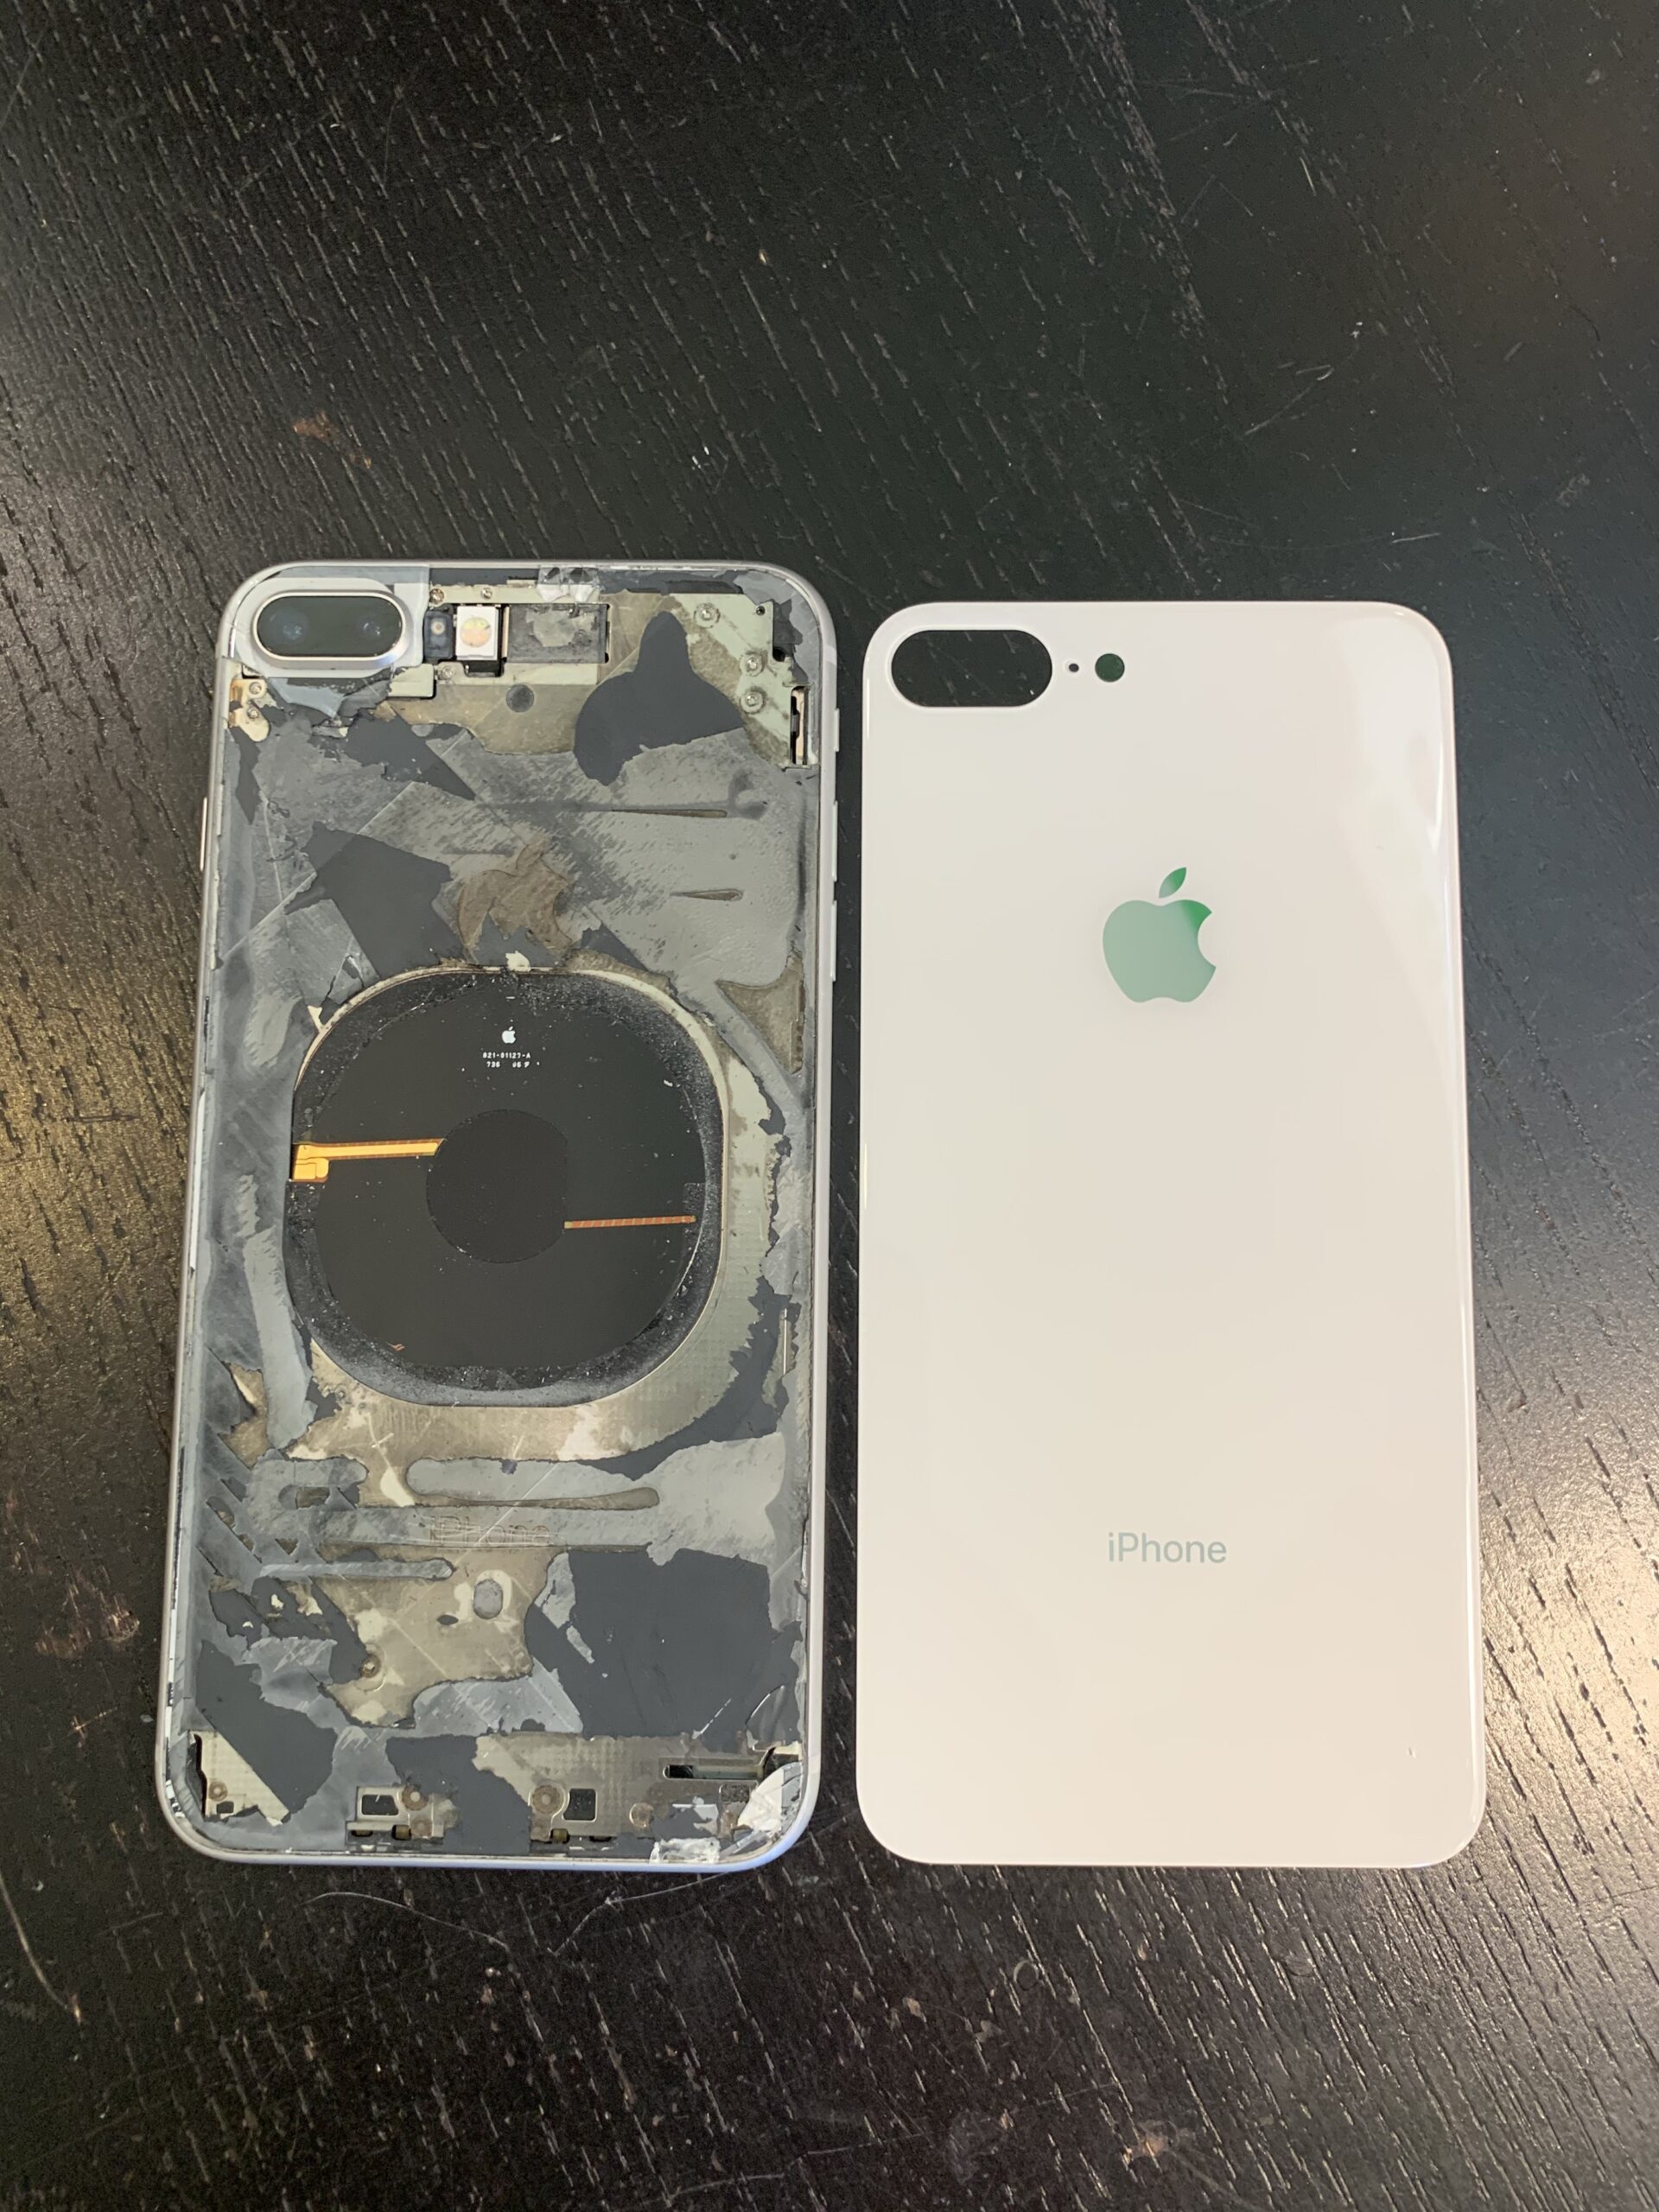 iPhone Phone Mobile Back Glass Repair